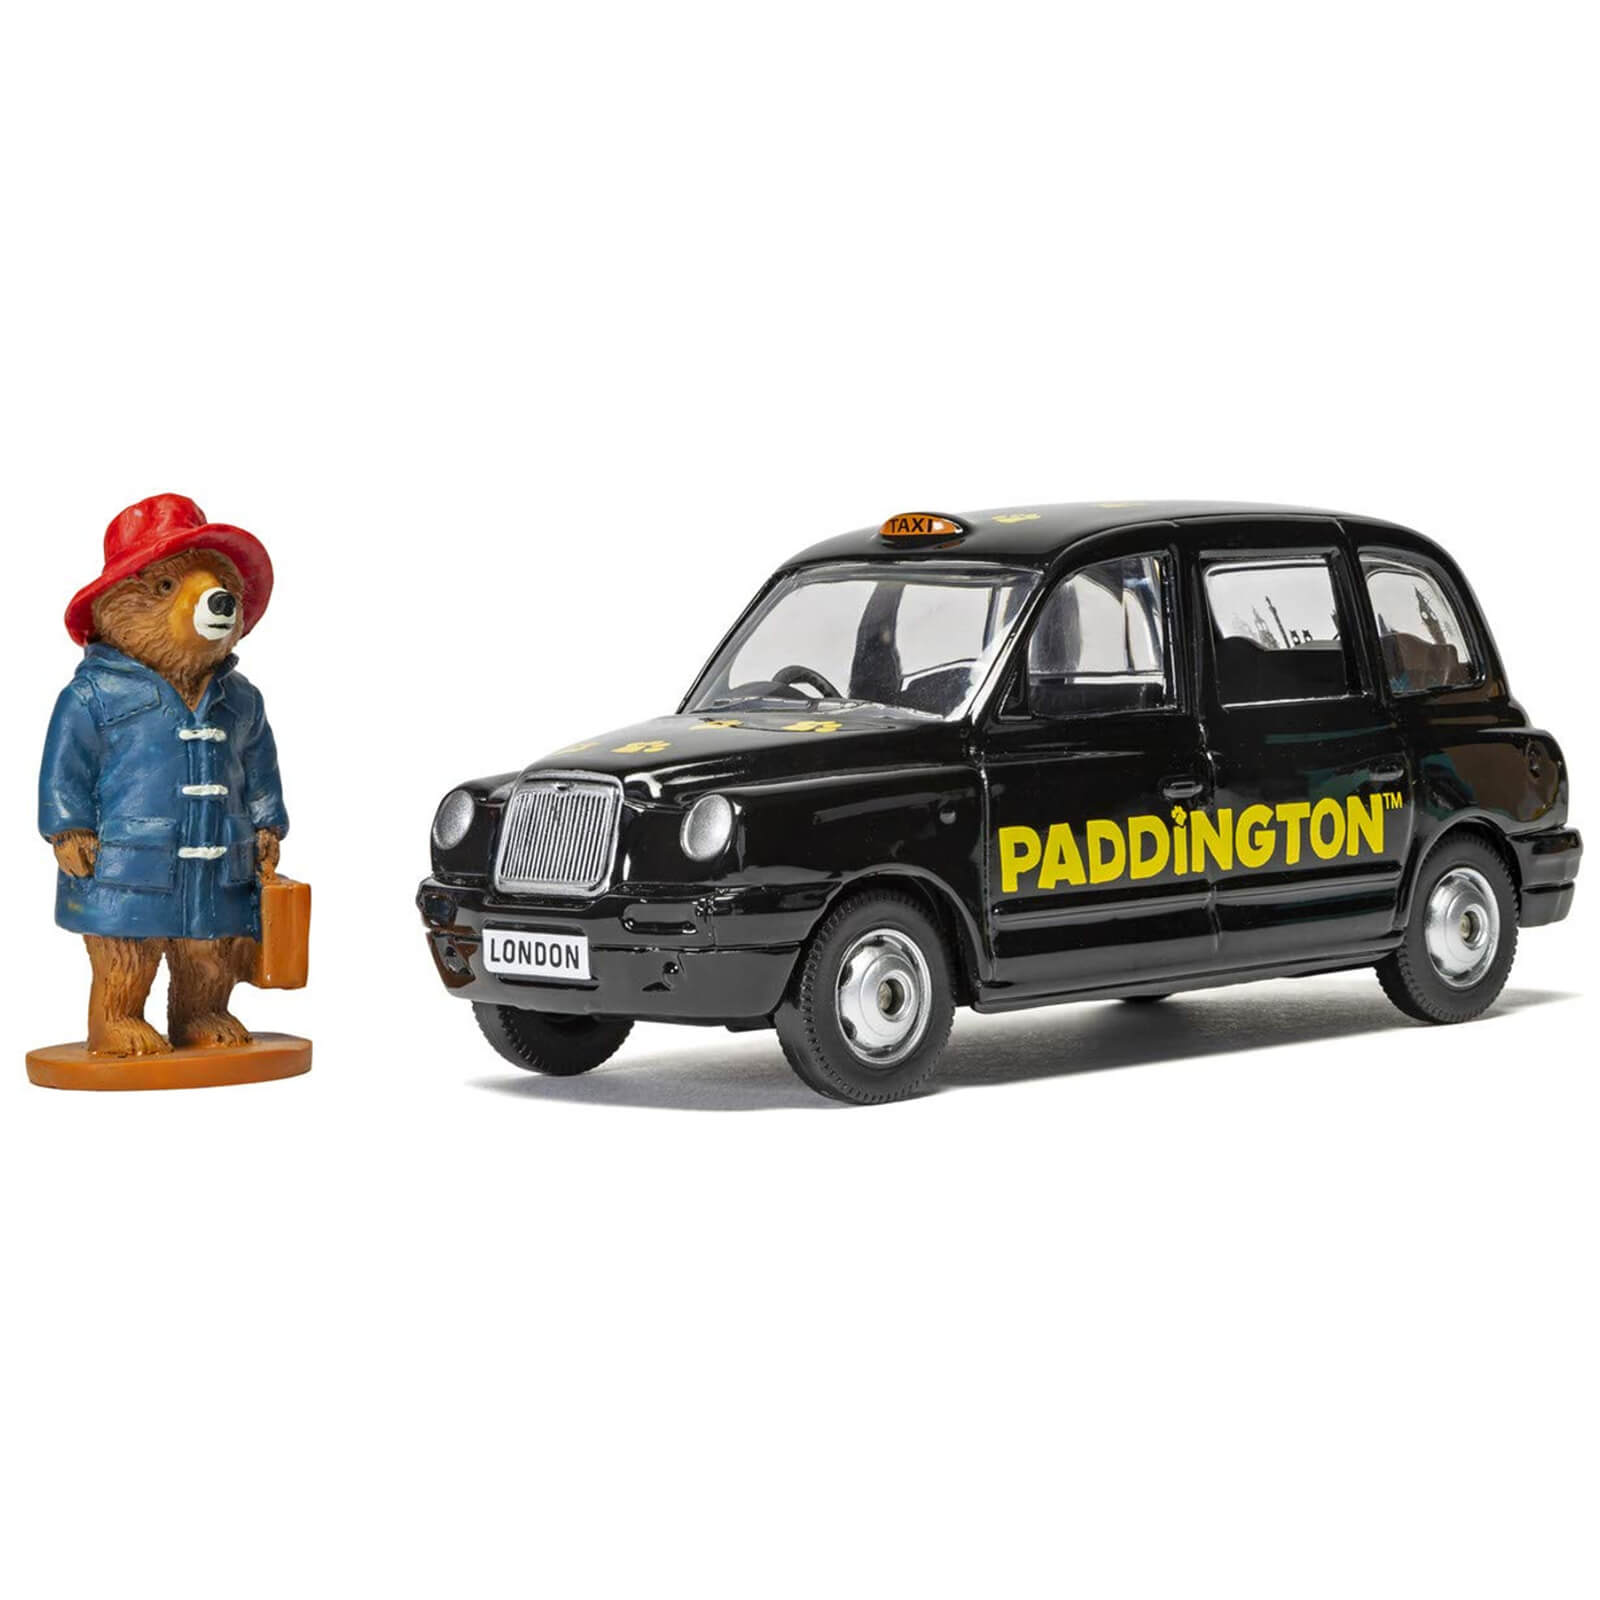 Set de modelos de Taxi de Londres y Oso Paddington - Escala 1:36